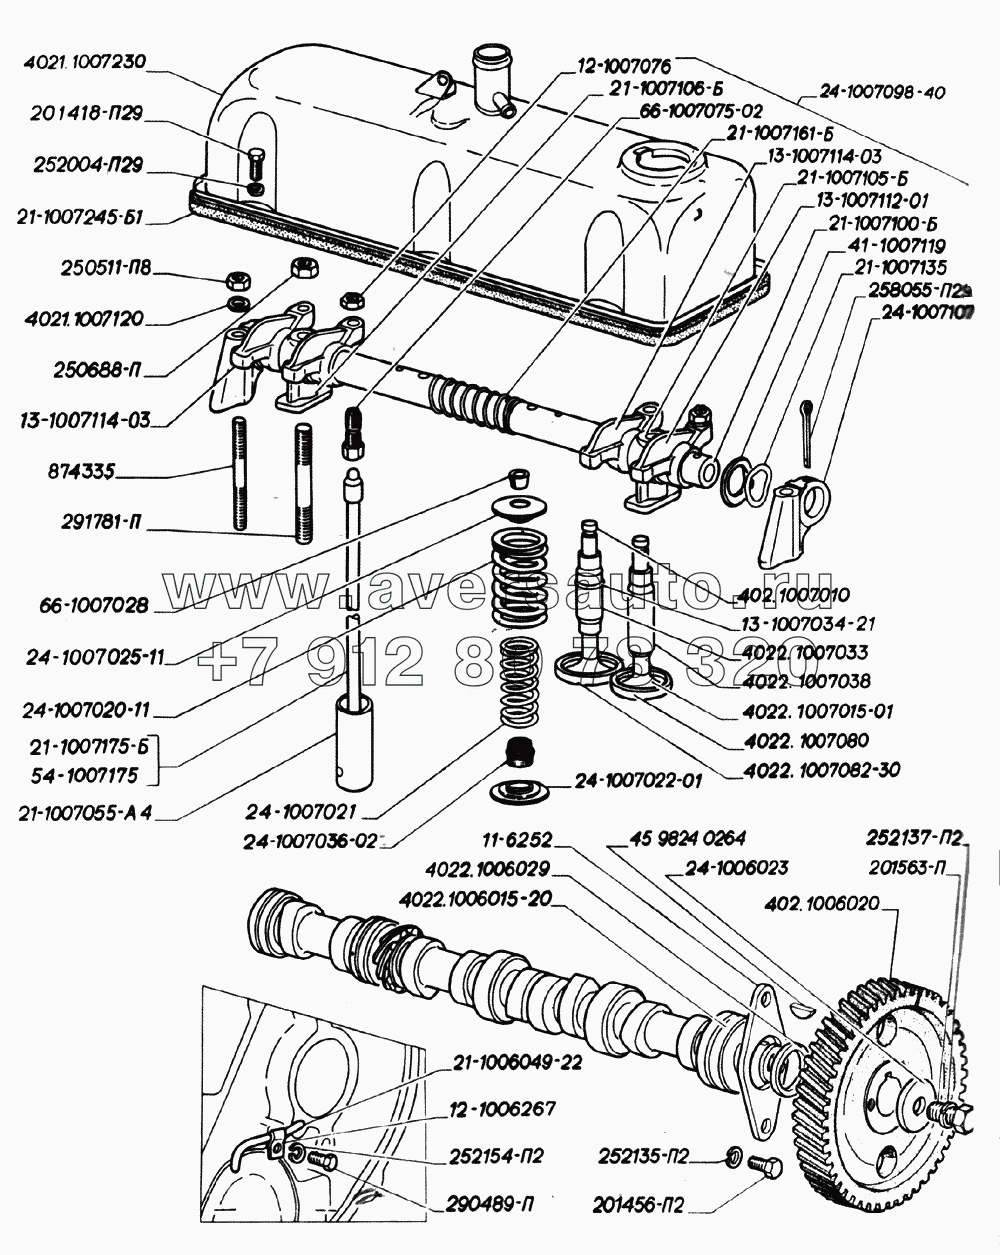 Вал распределительный, ось коромысел, клапаны и толкатели клапанов, крышка коромысел двигателей ЗМЗ-402